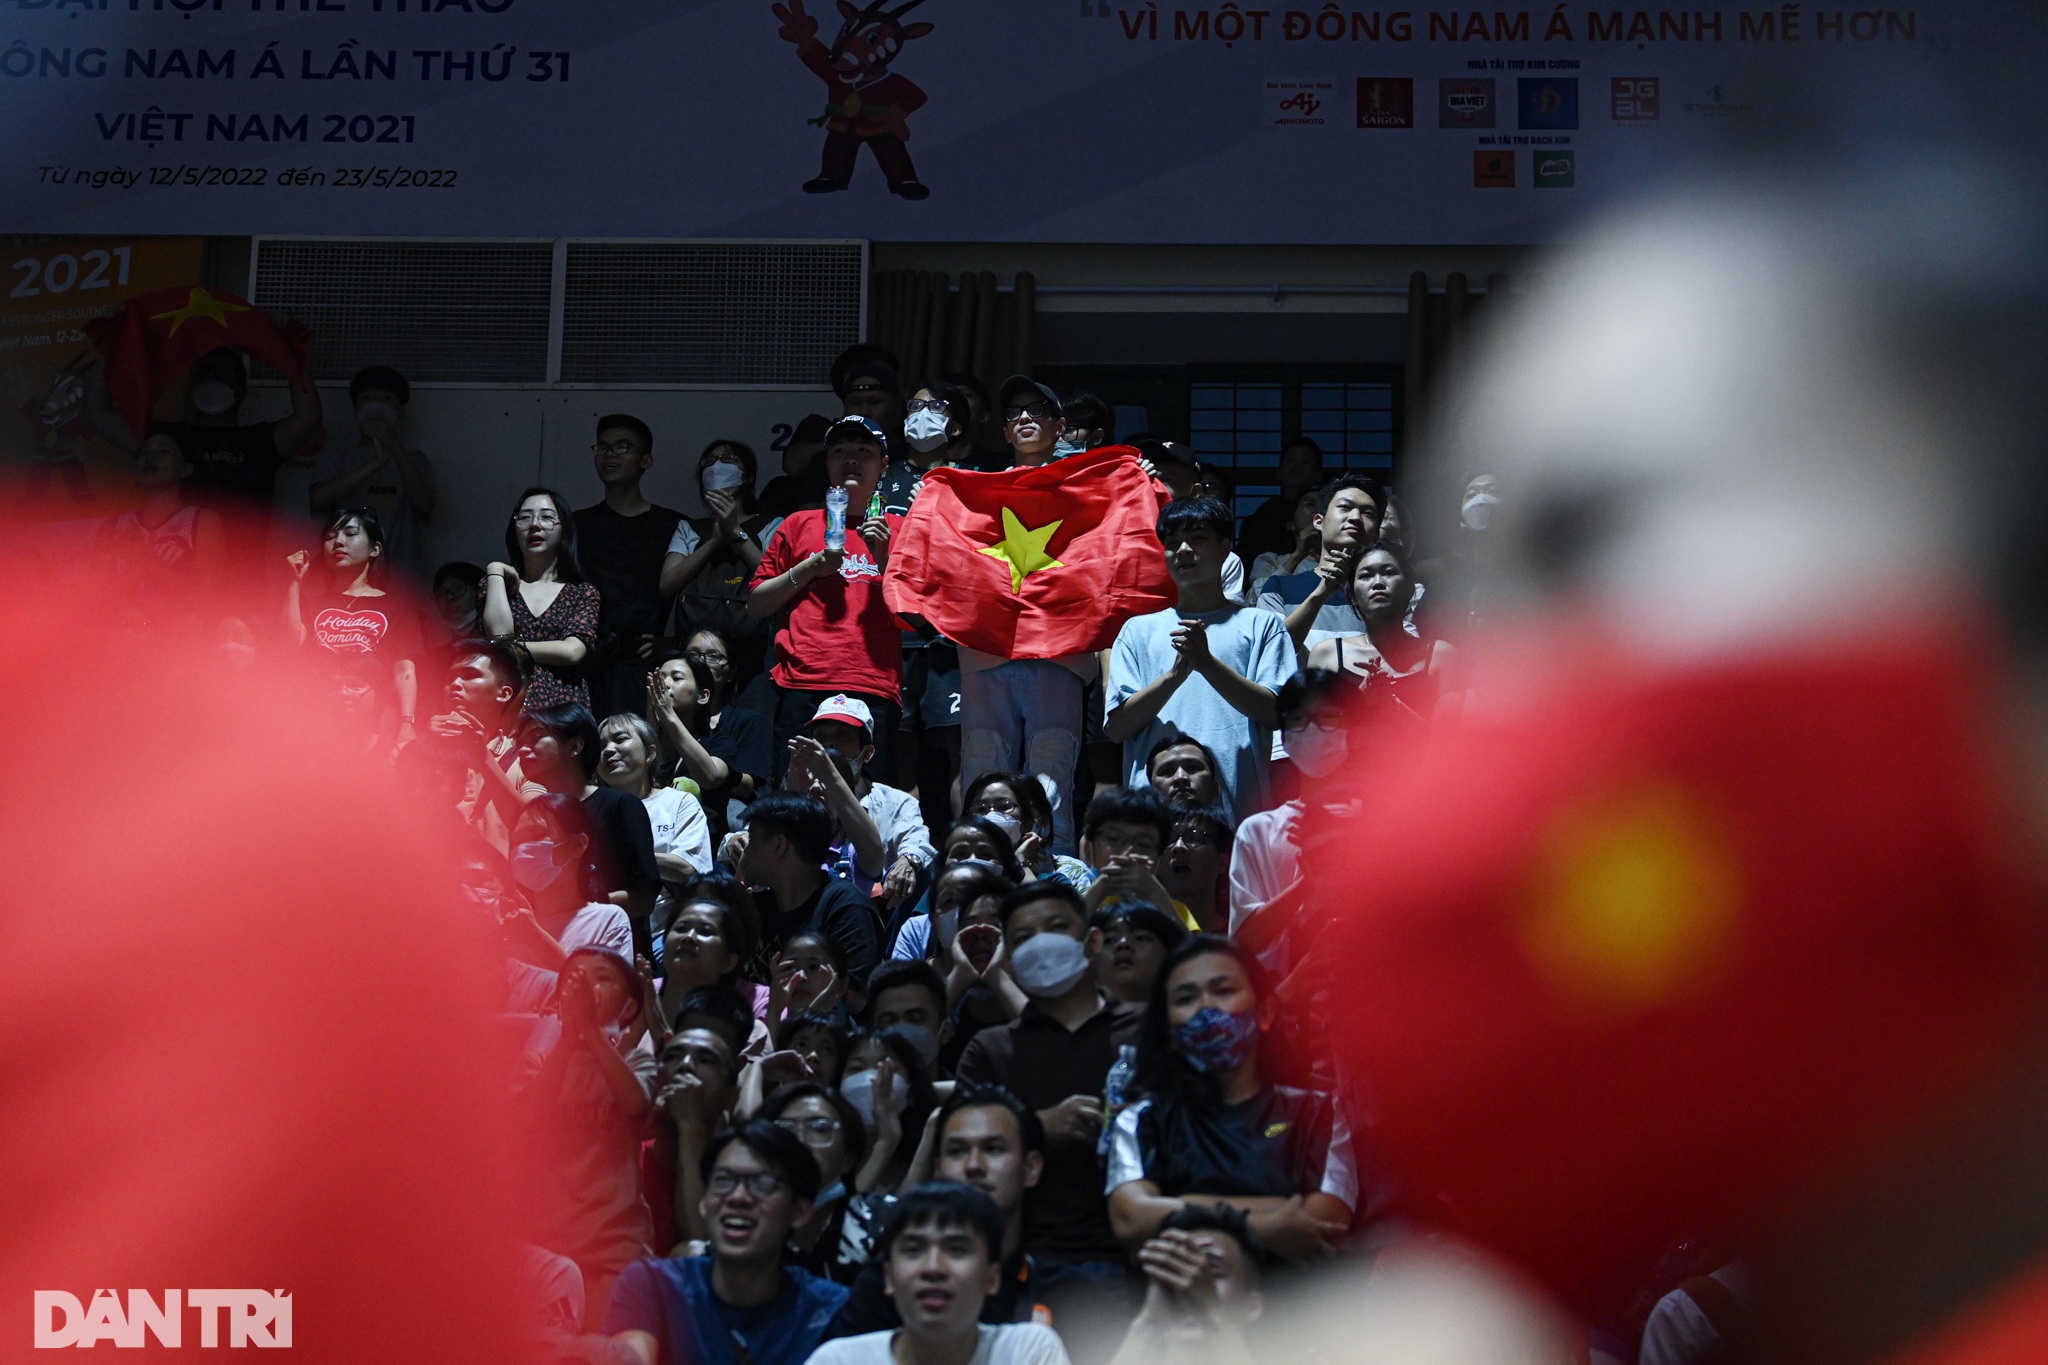 Hơn 1500 cổ động viên cháy hết mình cổ vũ đội tuyển bóng rổ Việt Nam - 12